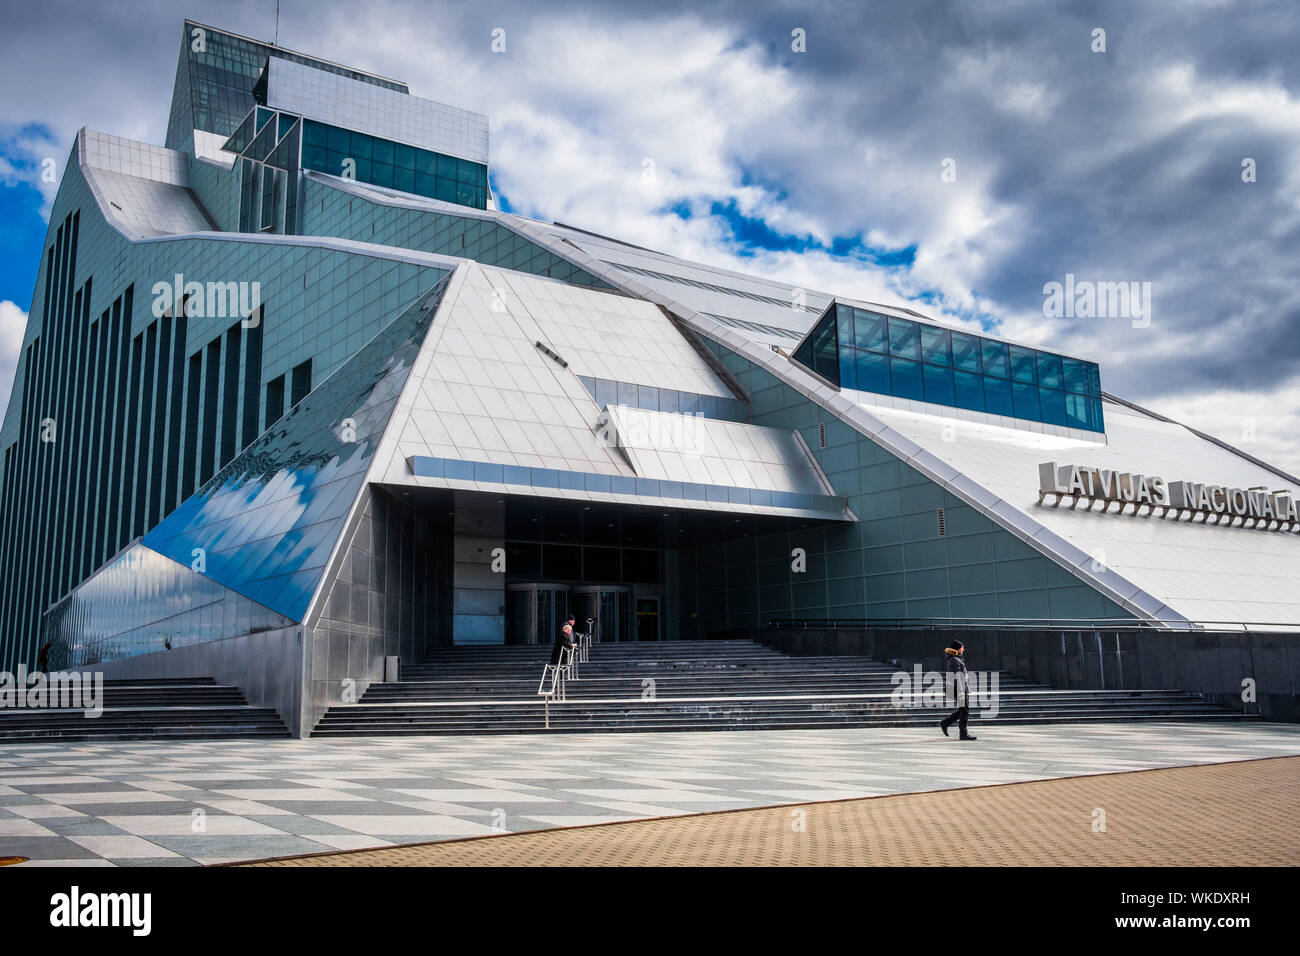 Letonia, Riga. La Biblioteca Nacional de 13 pisos edificio de vidrio y metal, con una colección de 6 millones de libros, en las orillas del río Dauvaga. Pedes Foto de stock